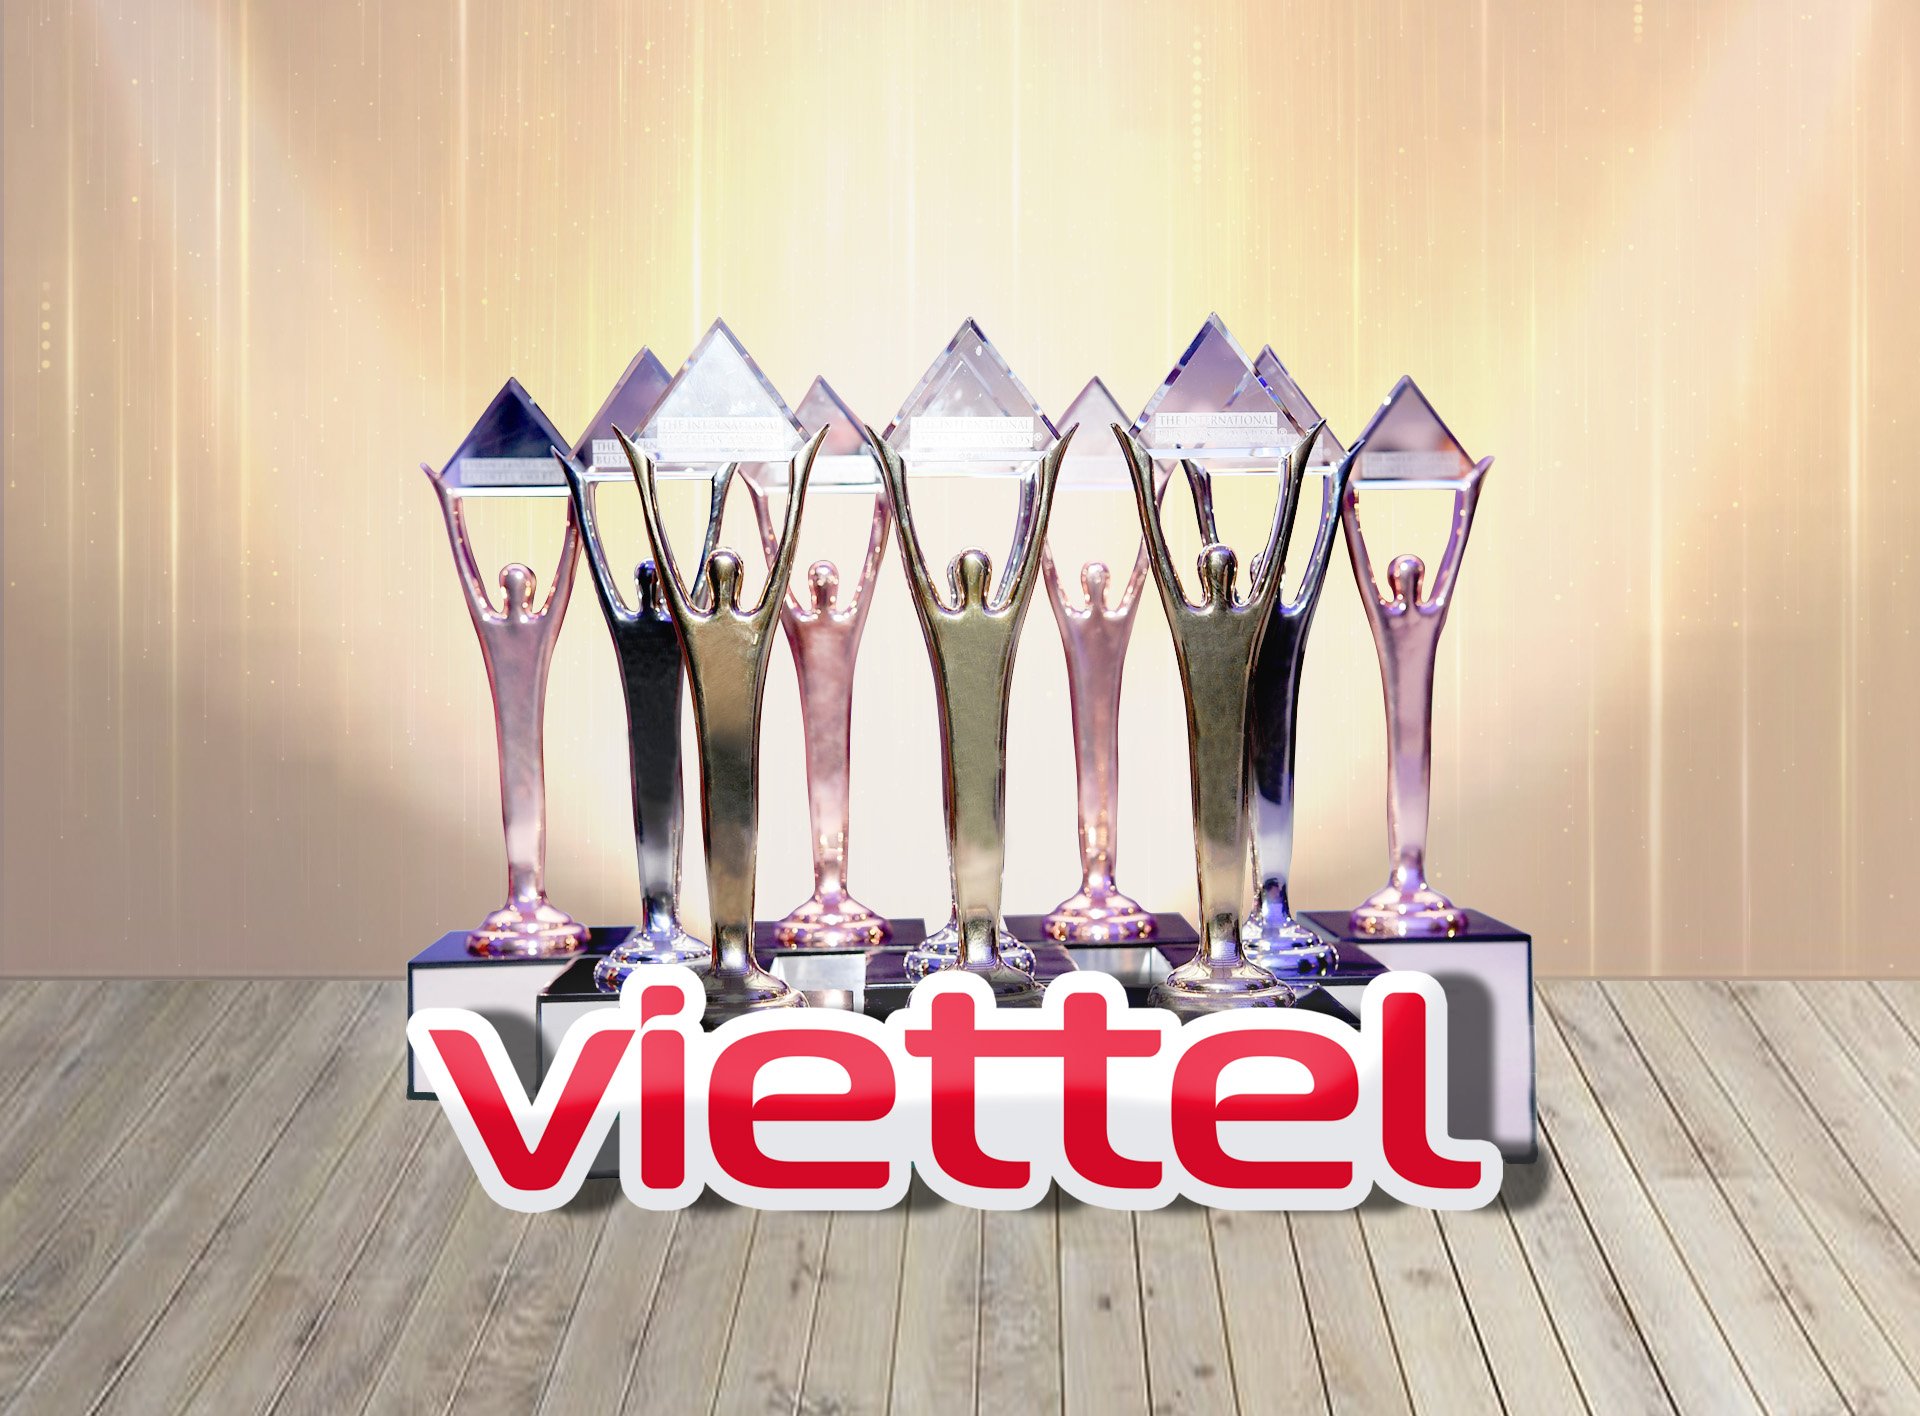 Viettel là doanh nghiệp Việt Nam thành công nhất tại IBA Stevie Awards với 51 giải thưởng, tương đương với những thương hiệu hàng đầu thế giới như Cisco, IBM, DHL…